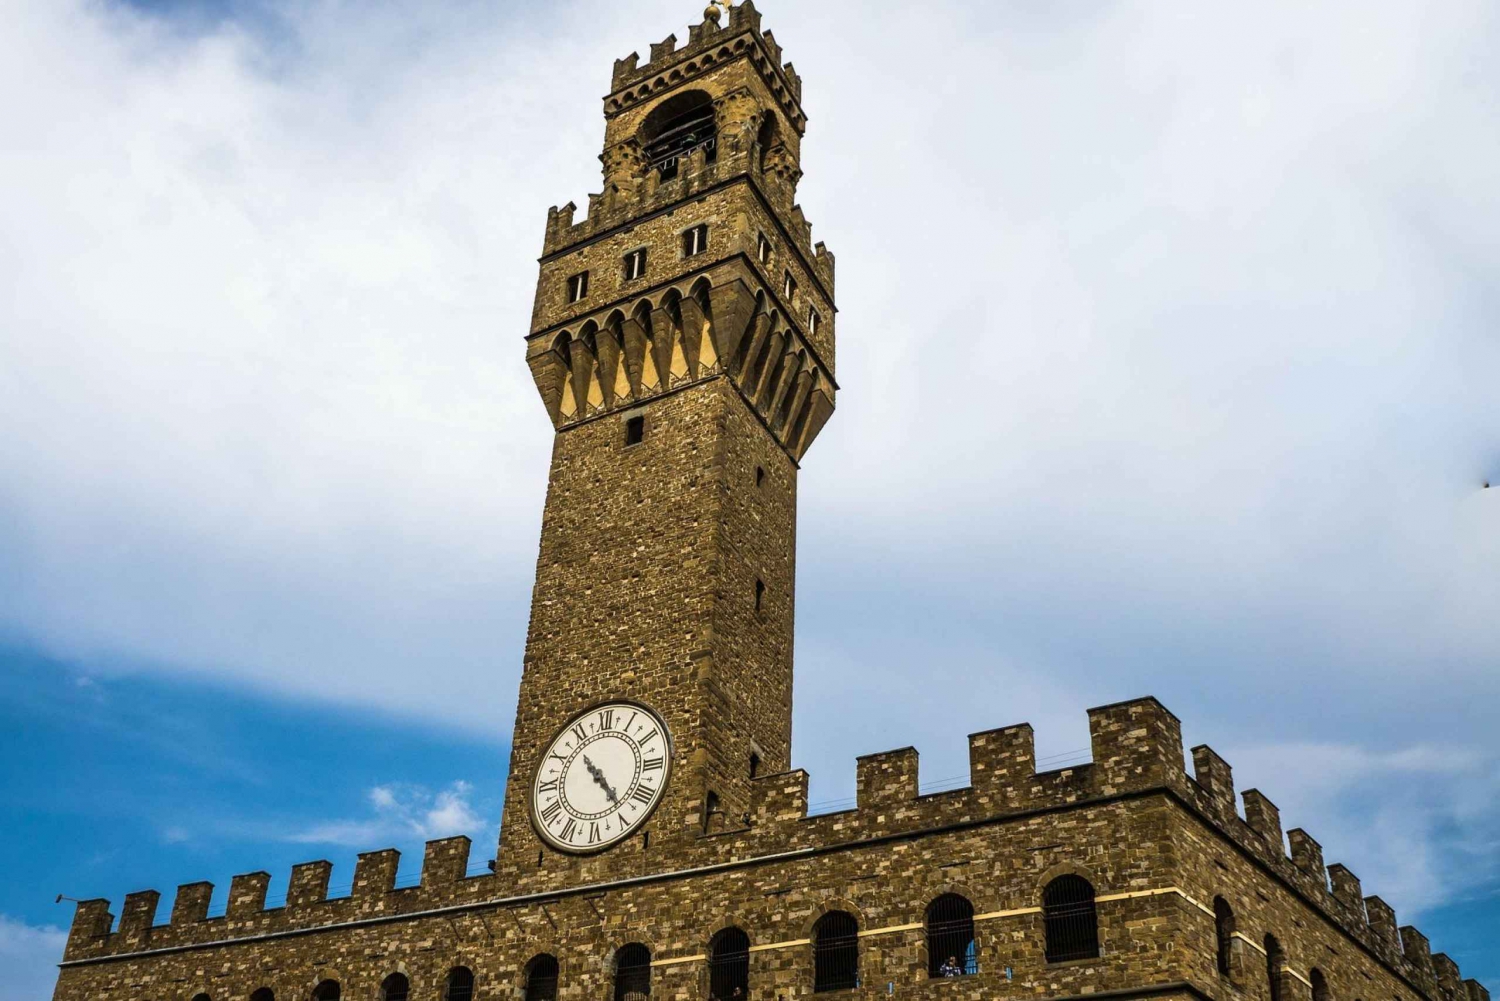 Florença: Museu do Palazzo Vecchio